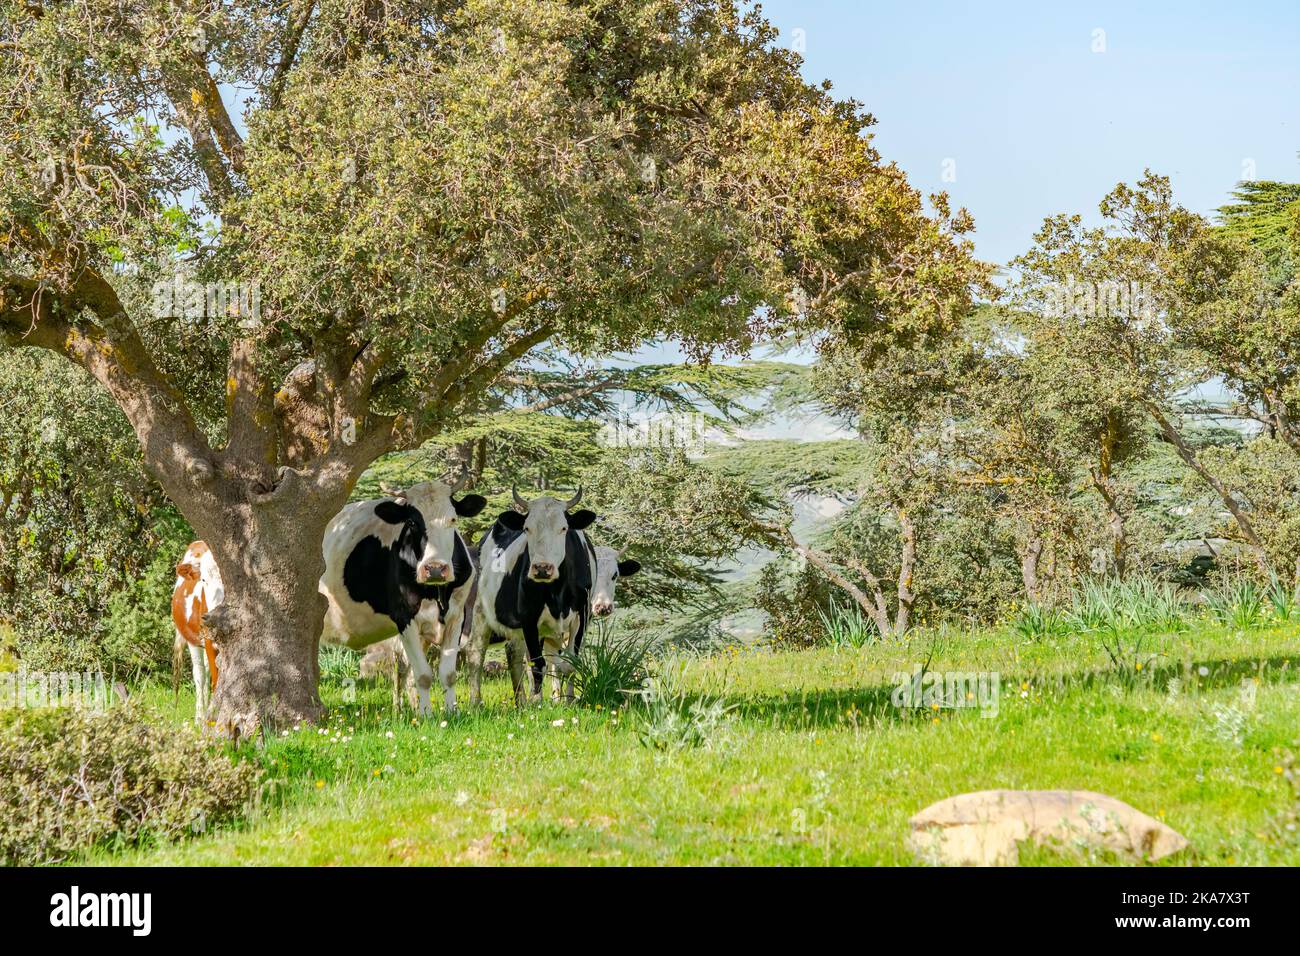 Quatre vaches debout devant l'appareil photo et derrière un arbre dans un pré avec des herbes vertes, des arbres et un ciel bleu. Banque D'Images